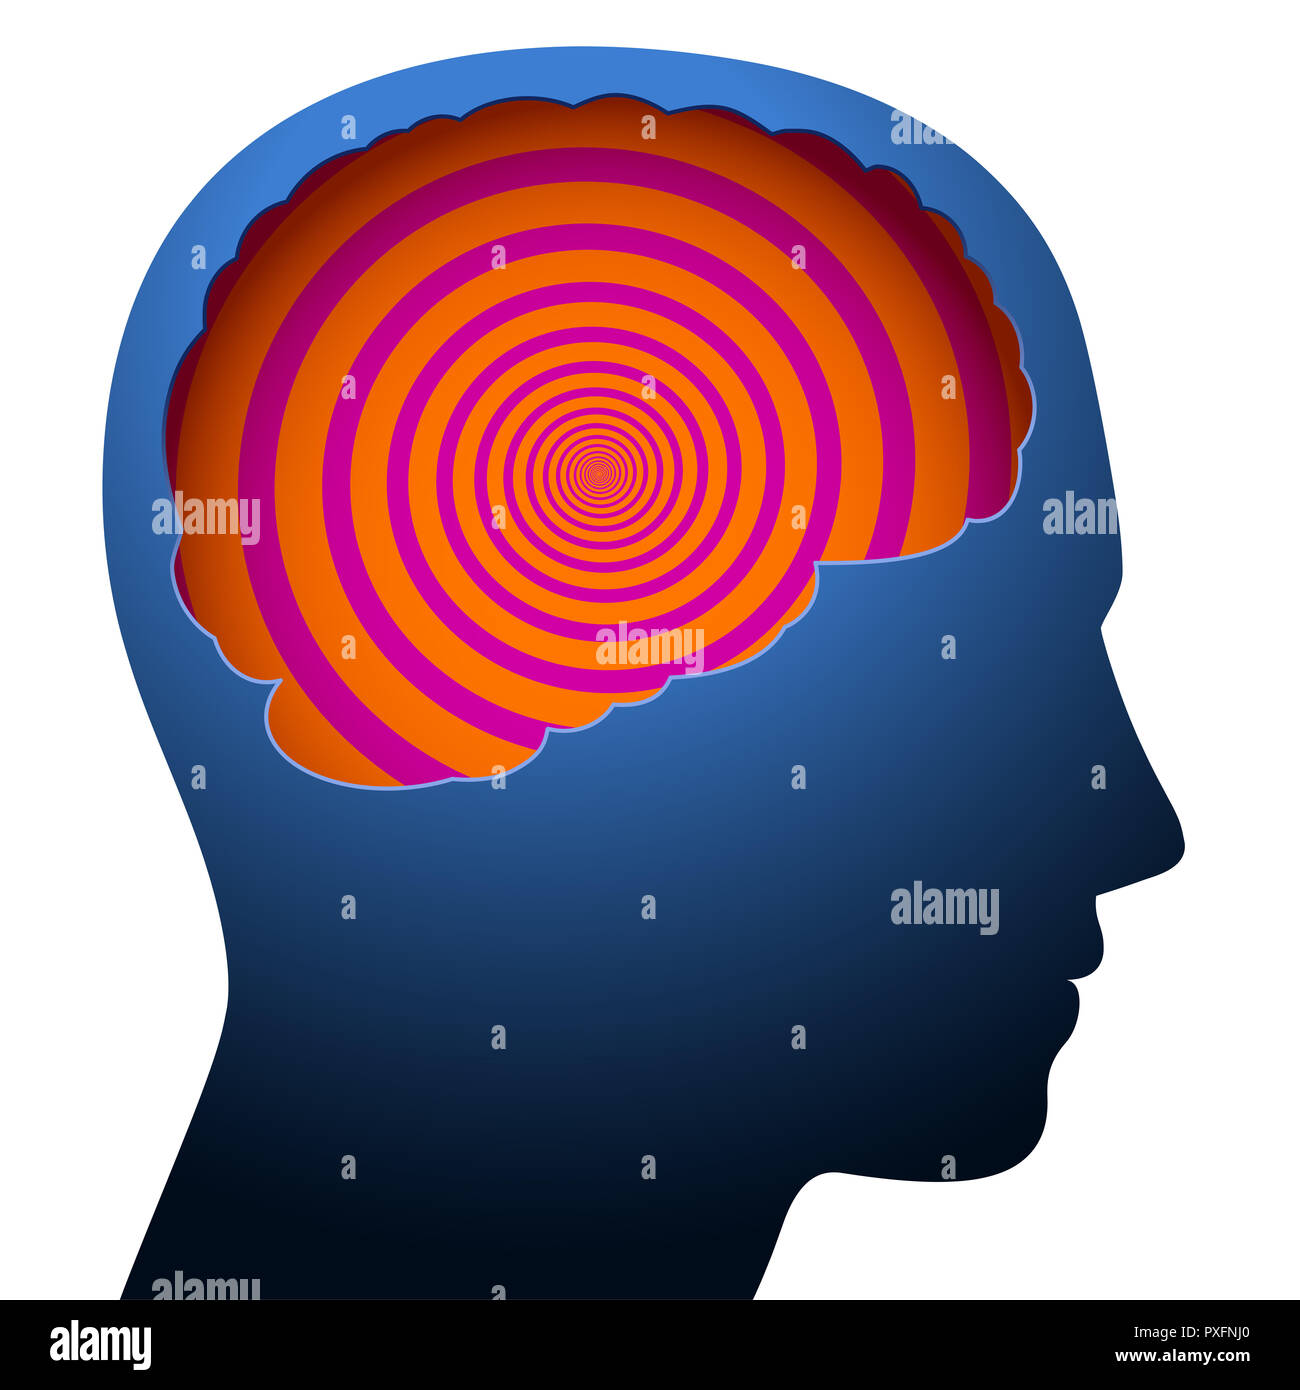 Confusion mentale, d'étourdissements, symbolisé par une spirale psychédélique dans le cerveau d'une jeune personne. Banque D'Images